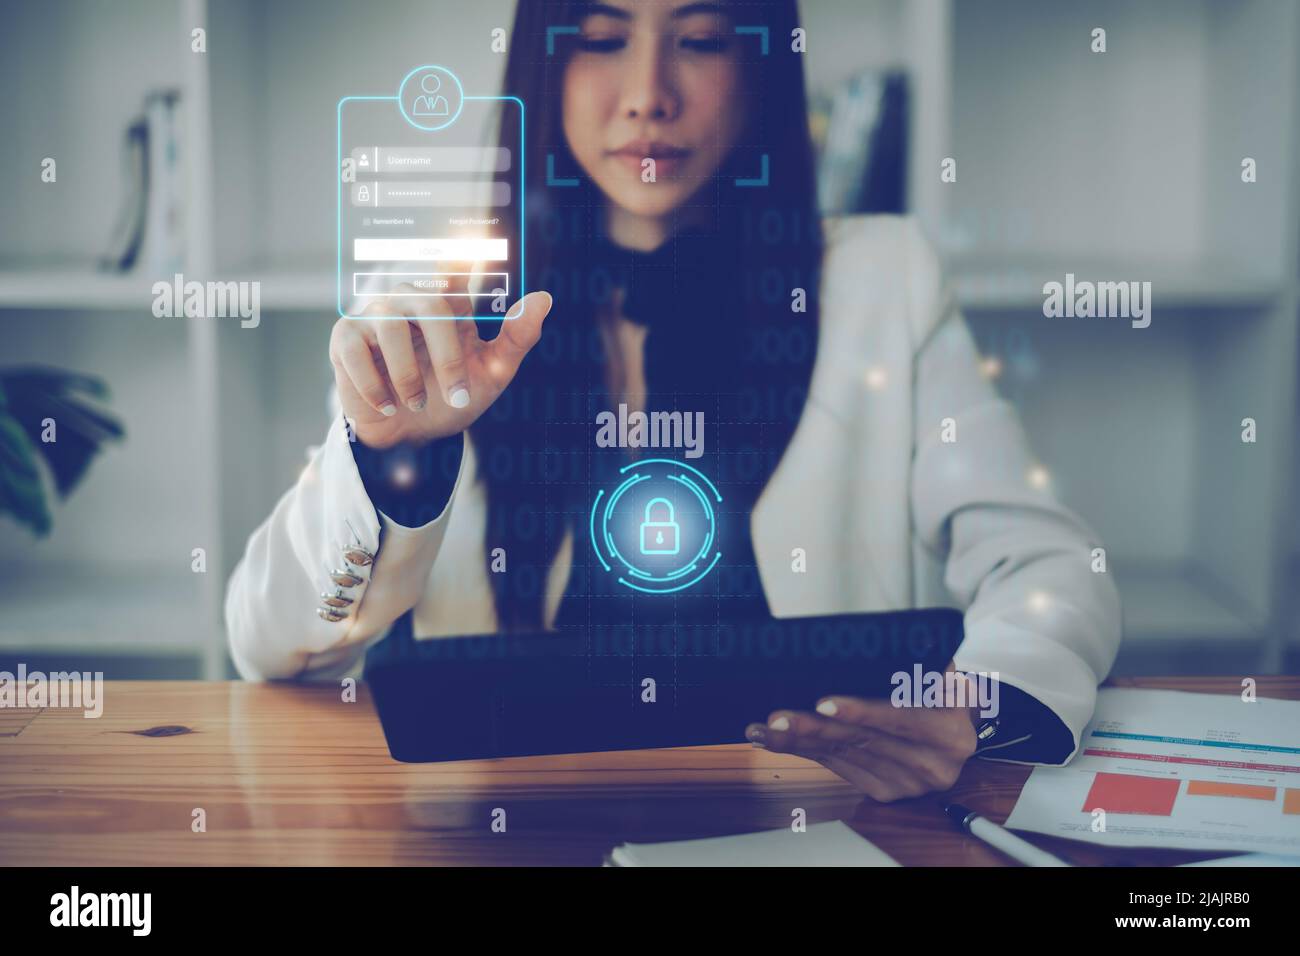 Une femme d'affaires utilisant le scan facial à la cyber-sécurité pour son compte d'épargne, l'entreprise, la technologie et le futur concept. Banque D'Images